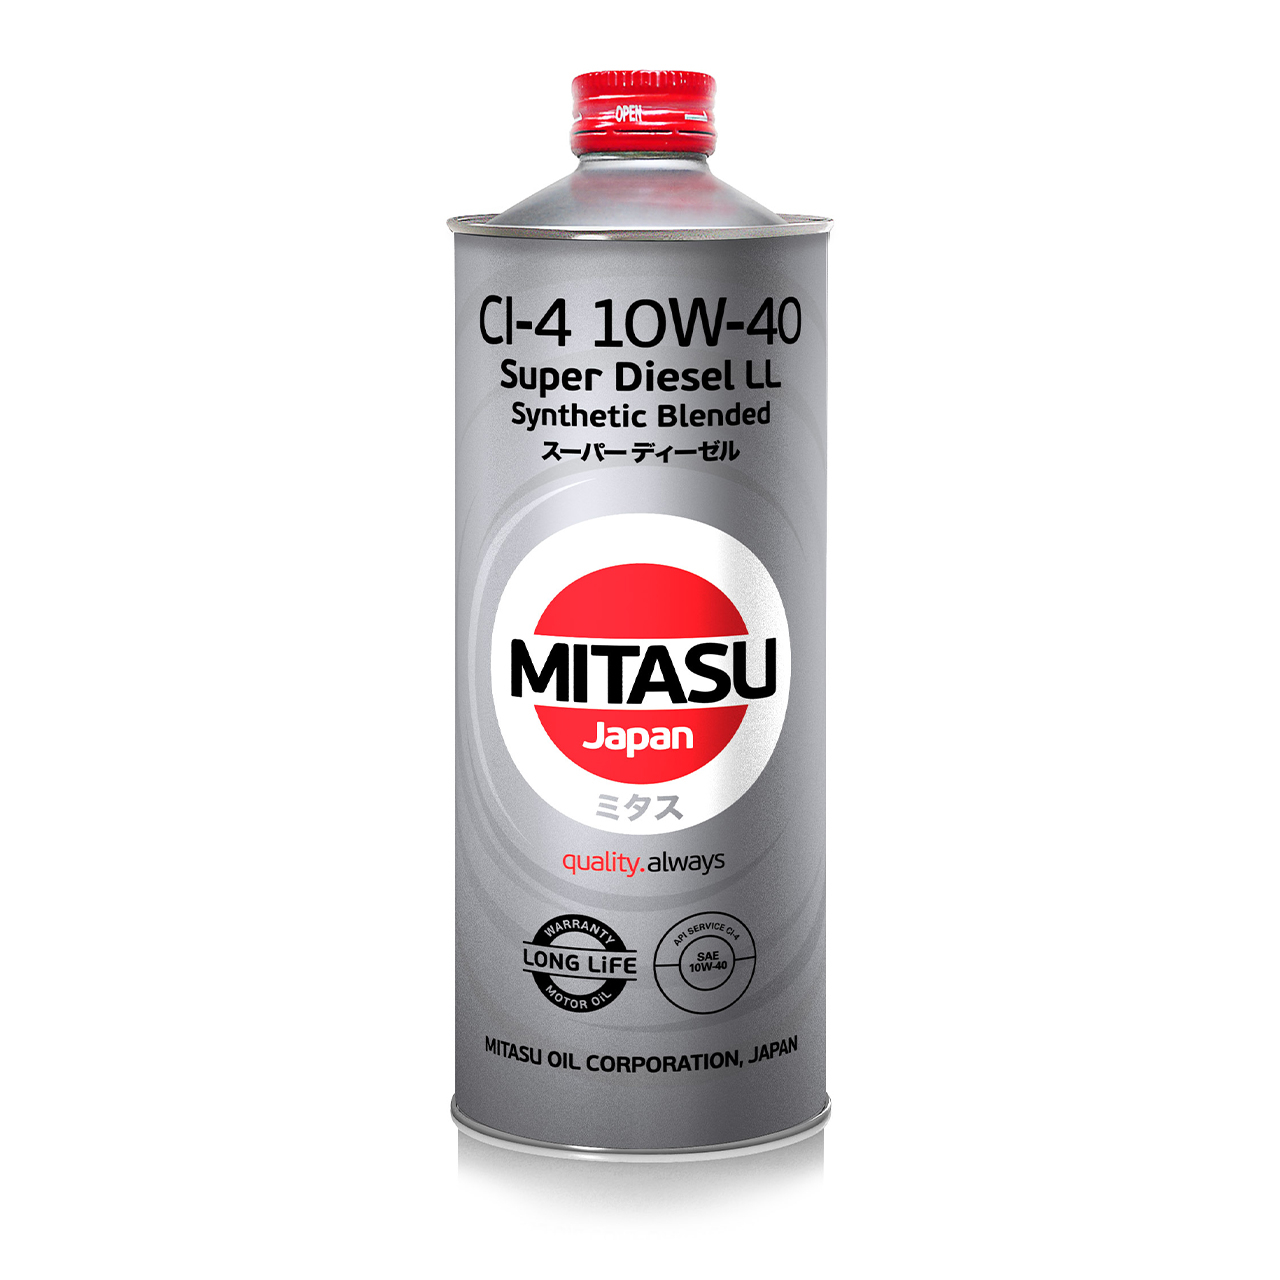 Купить запчасть MITASU - MJ2221 Масло моторное MITASU CI-4 10w40 1л п/синтетическое для дизельных двигателей MJ222 (1/20) Япония